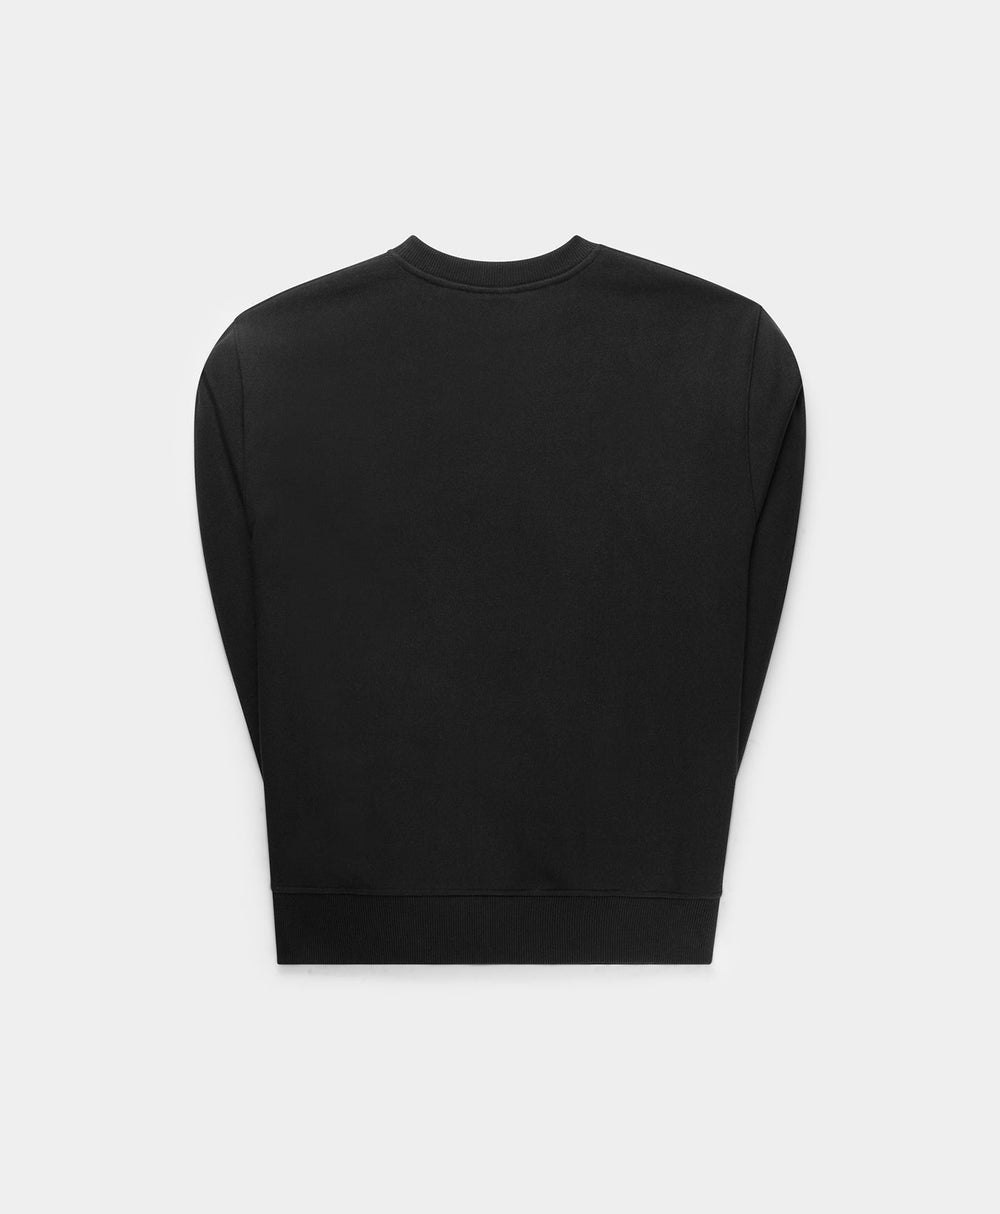 DP - Black Nirway Sweater - Packshot - Rear